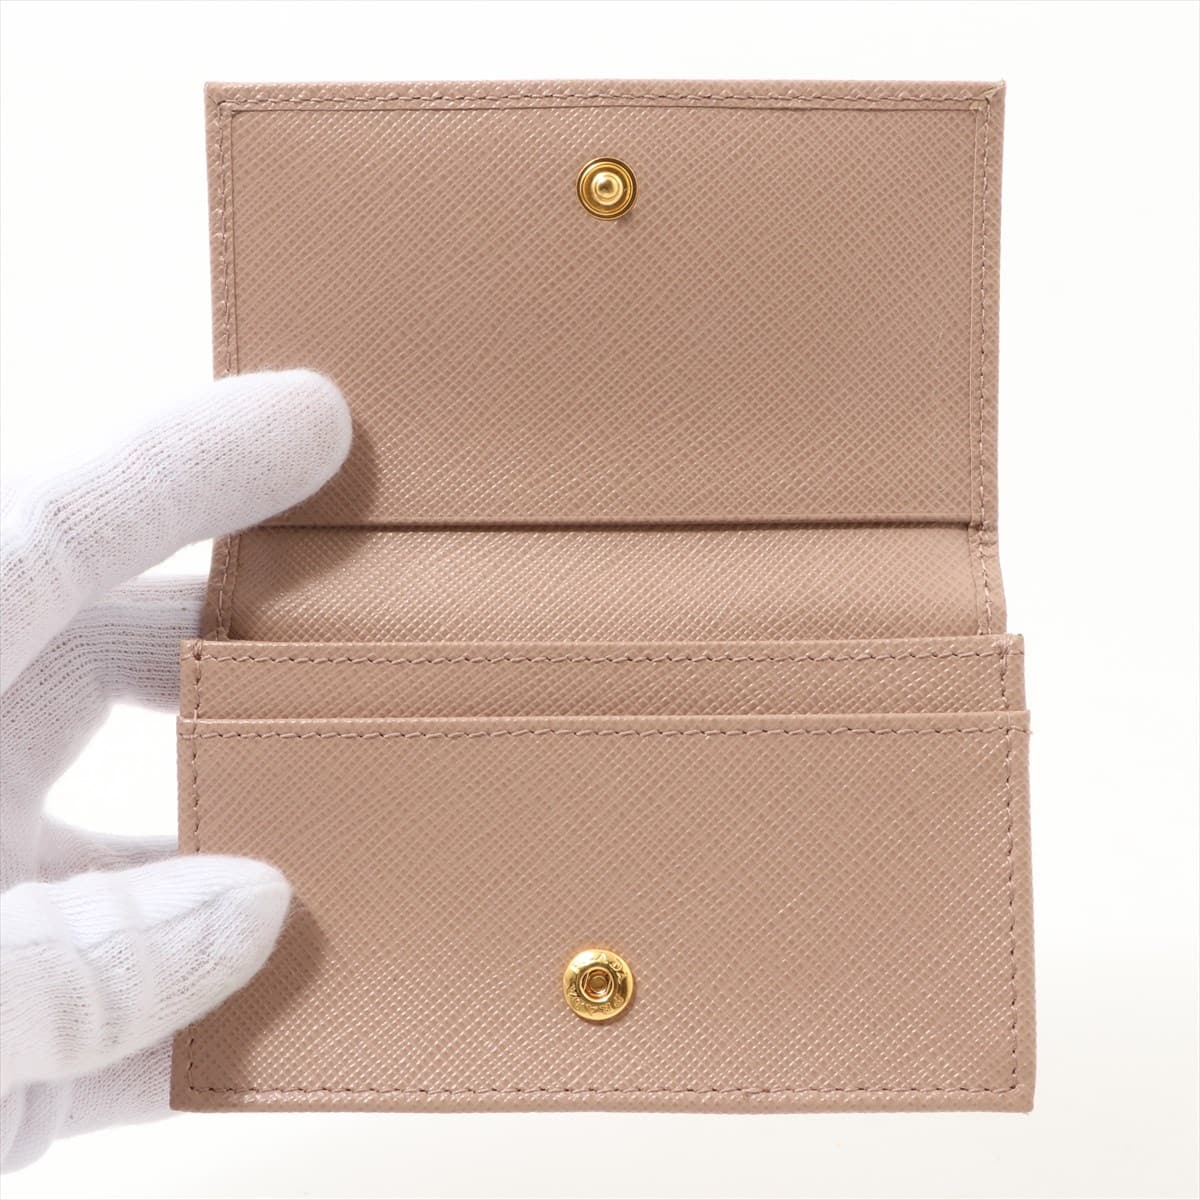 Prada Saffiano 1MC122 Leather Card case Pink